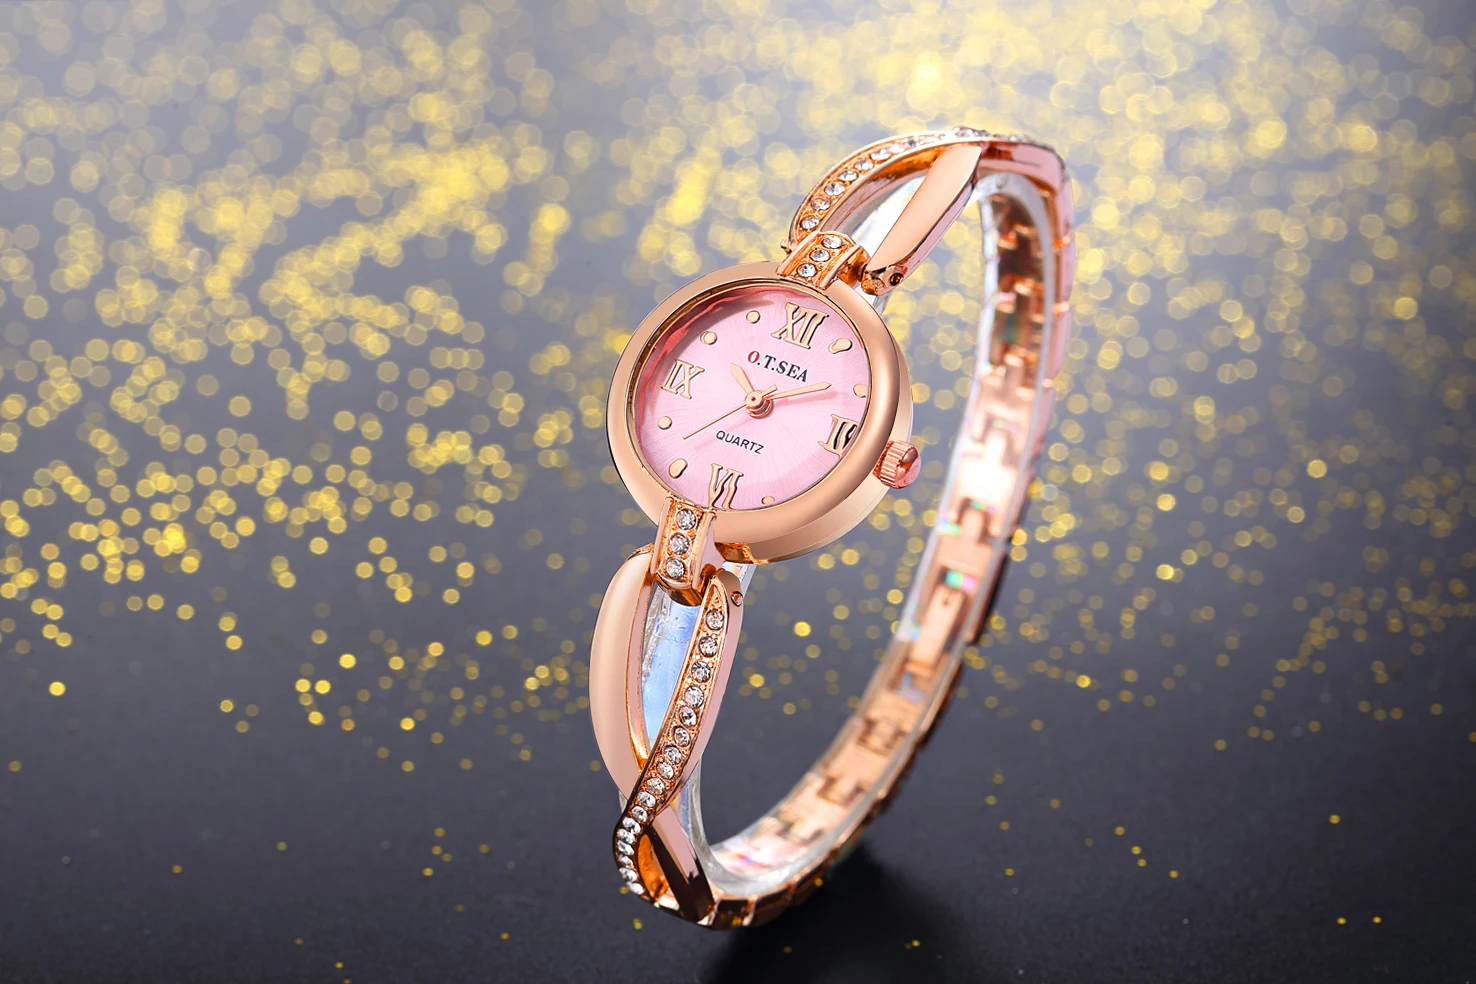 Горячая O. T. SEA бренд розовое золото браслет женские наручные часы Кристалл платье кварцевые наручные часы Relogio Feminino OTS064